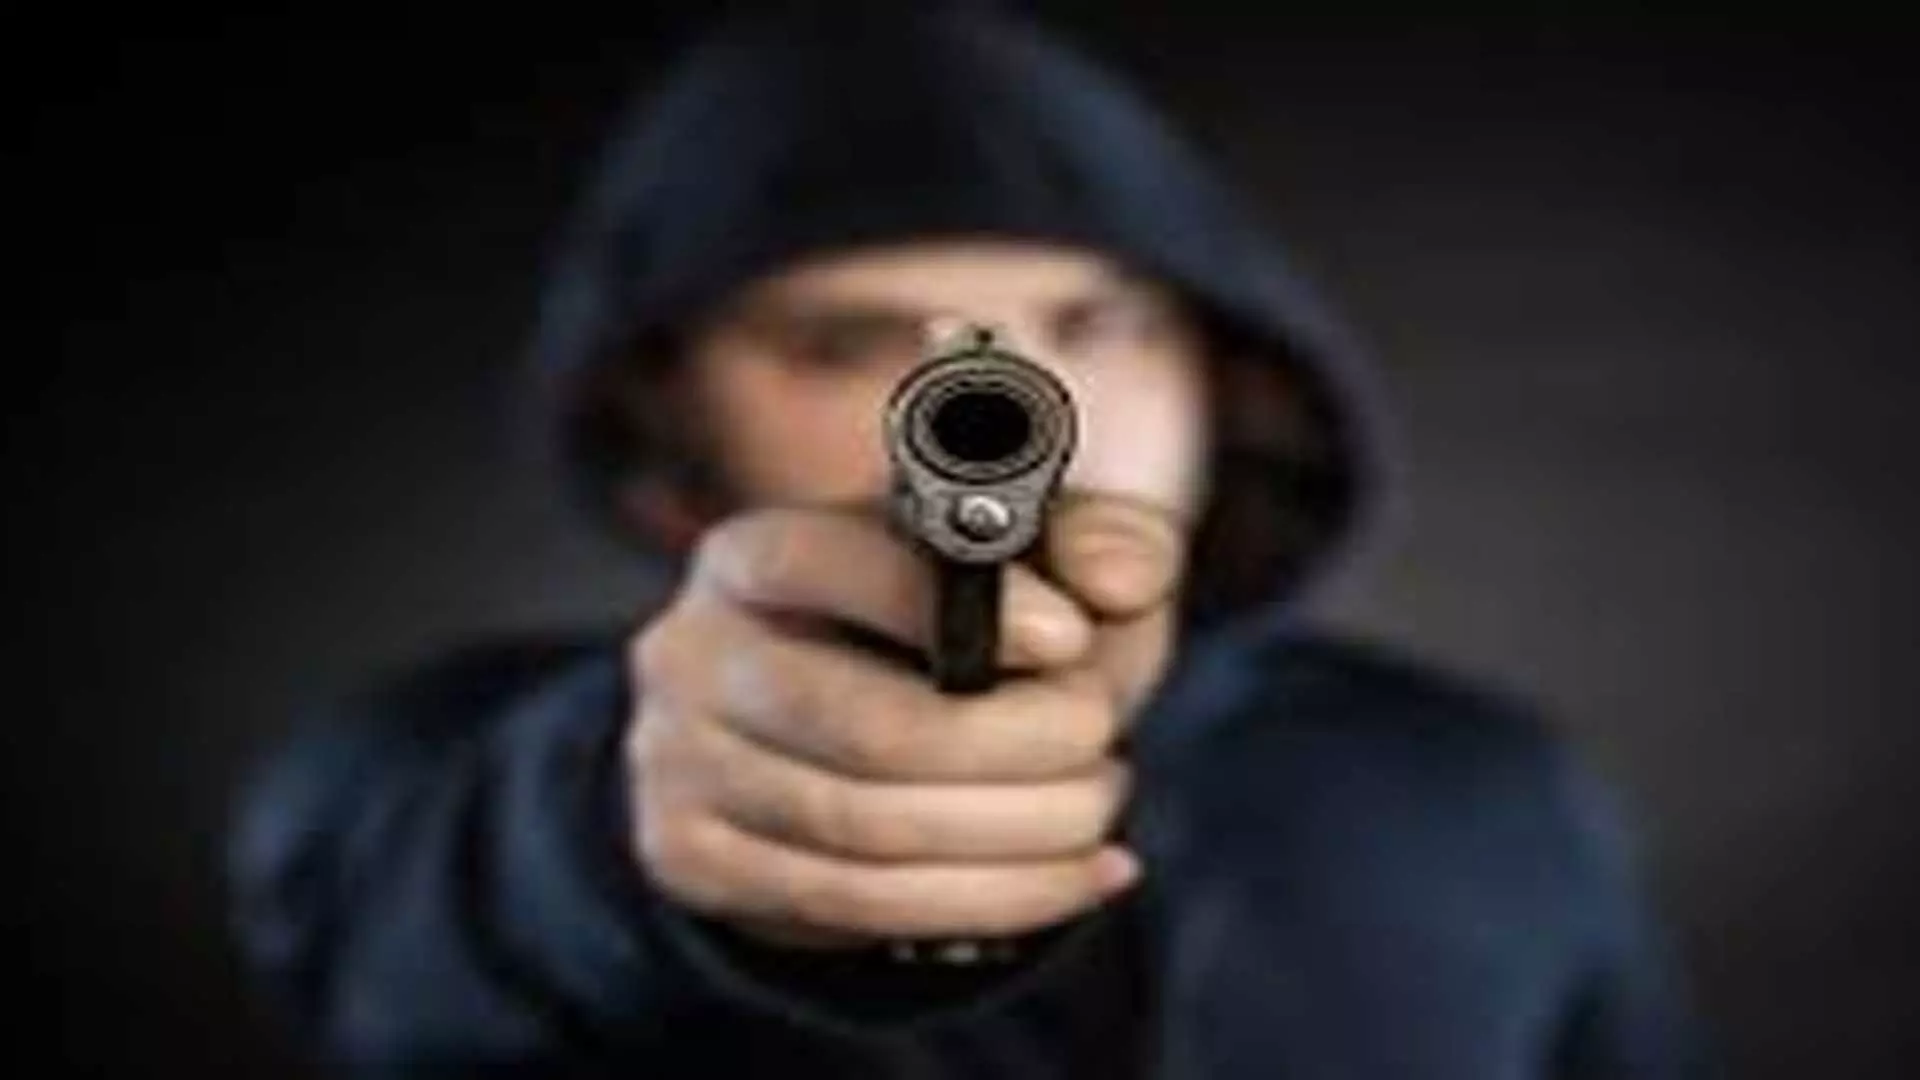 Police: 72 वर्षीय सेवानिवृत्त यूपी पुलिसकर्मी ने अपनी डबल बैरल बंदूक से खुद को मरी गोली